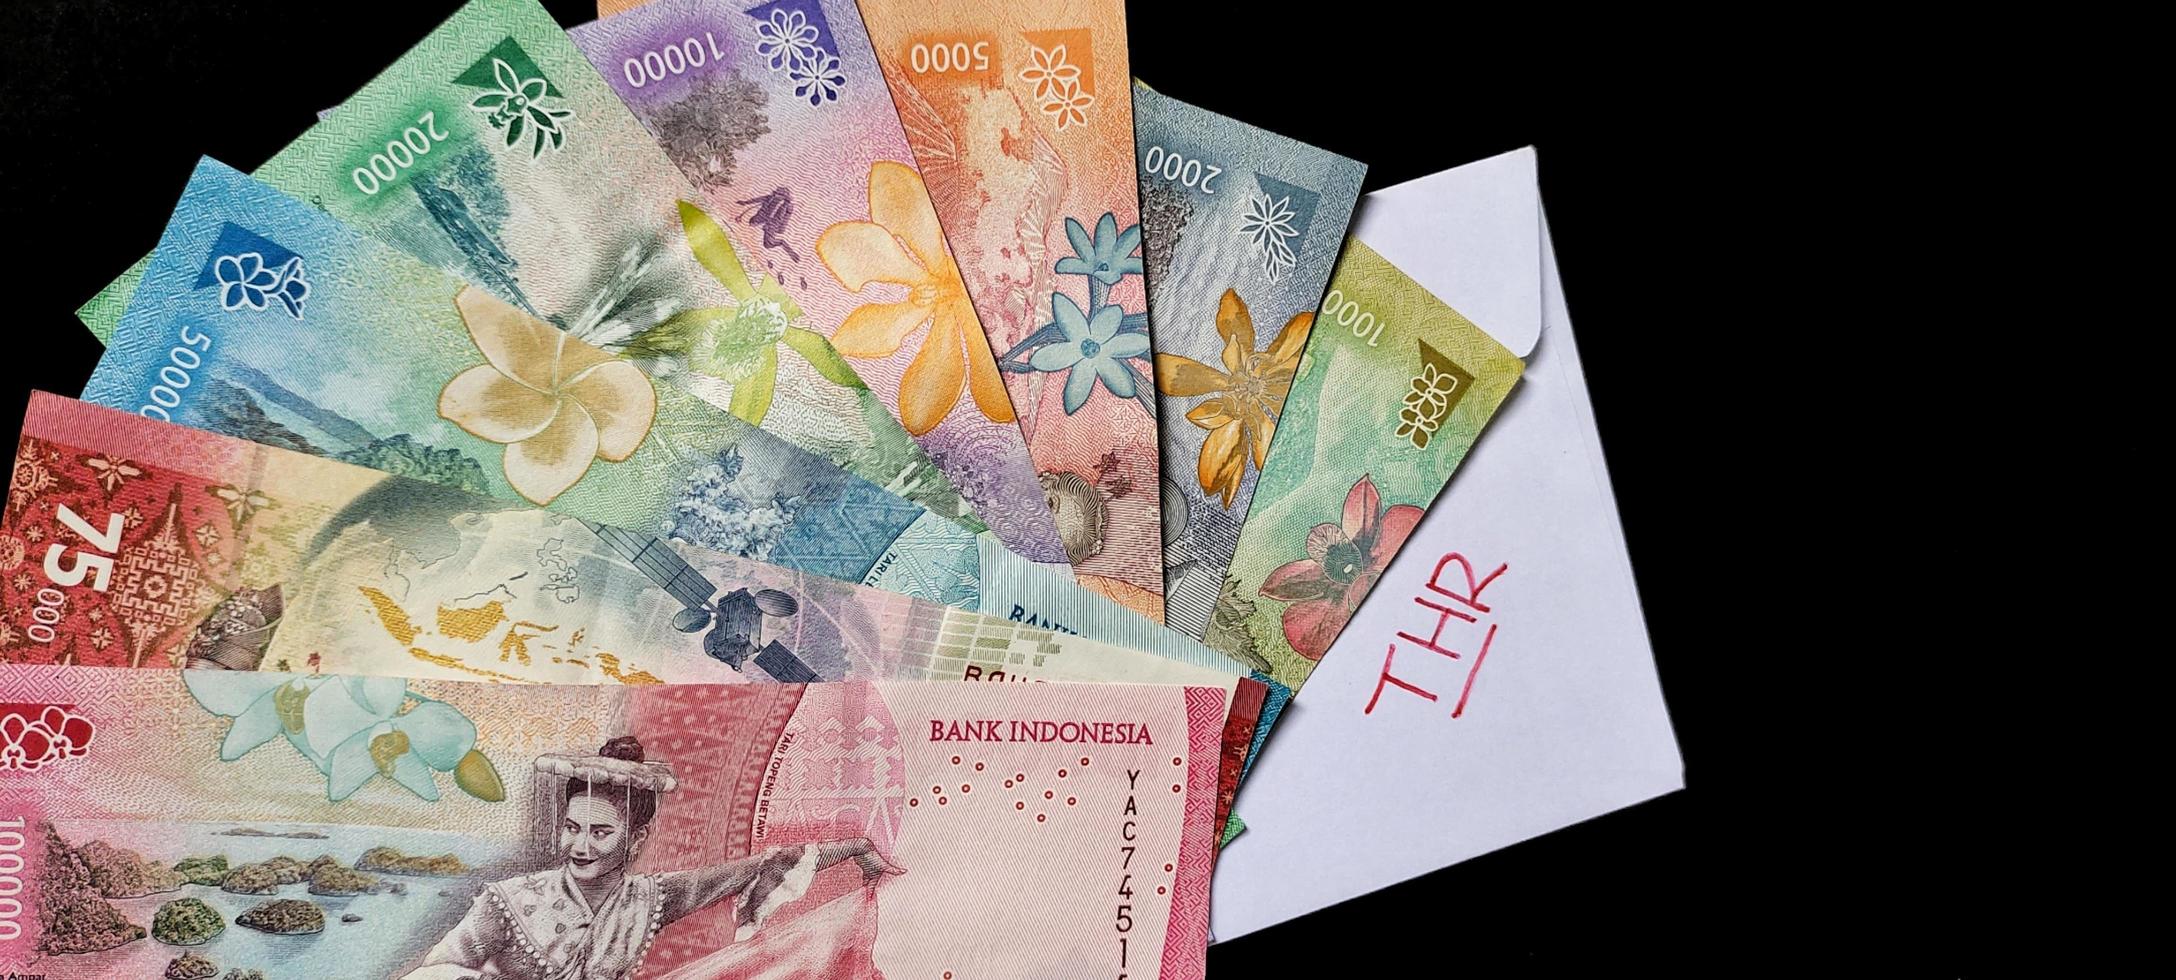 nieuw bankbiljetten uitgegeven in 2022 van rp. 1.000 naar rp. 100.000. Indonesisch roepia valuta met een wit envelop gelabeld door. tunjangan hari raya concept foto